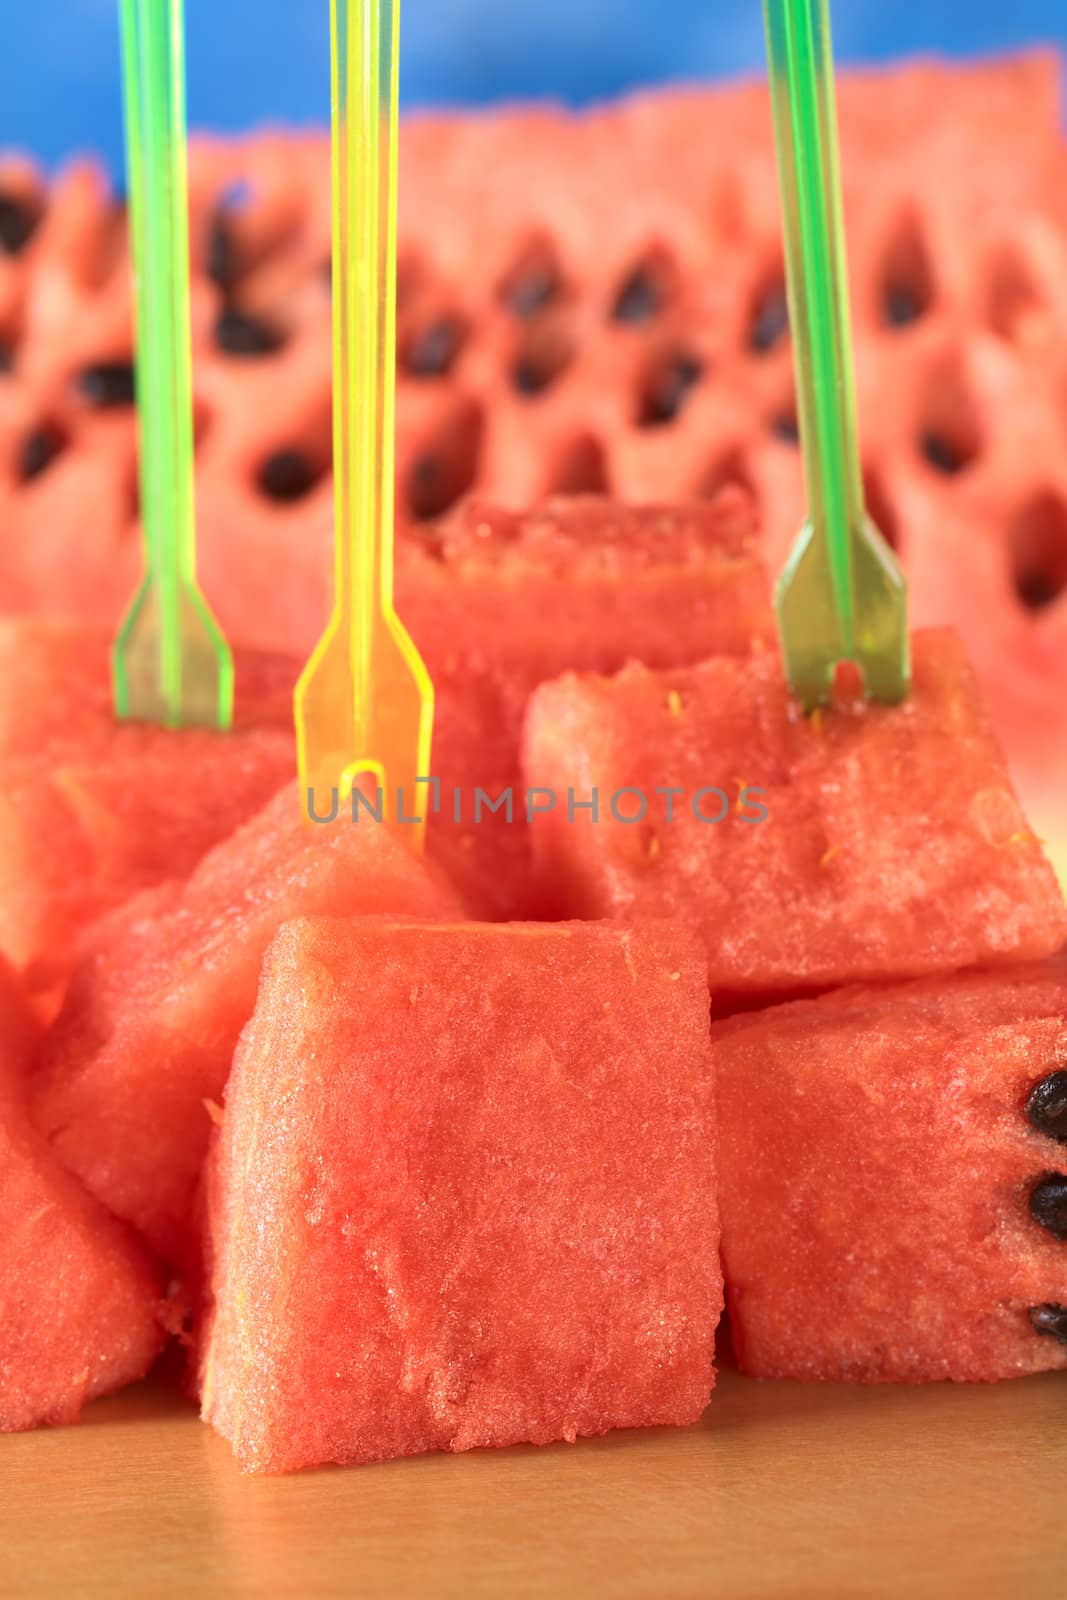 Watermelon Pieces by ildi